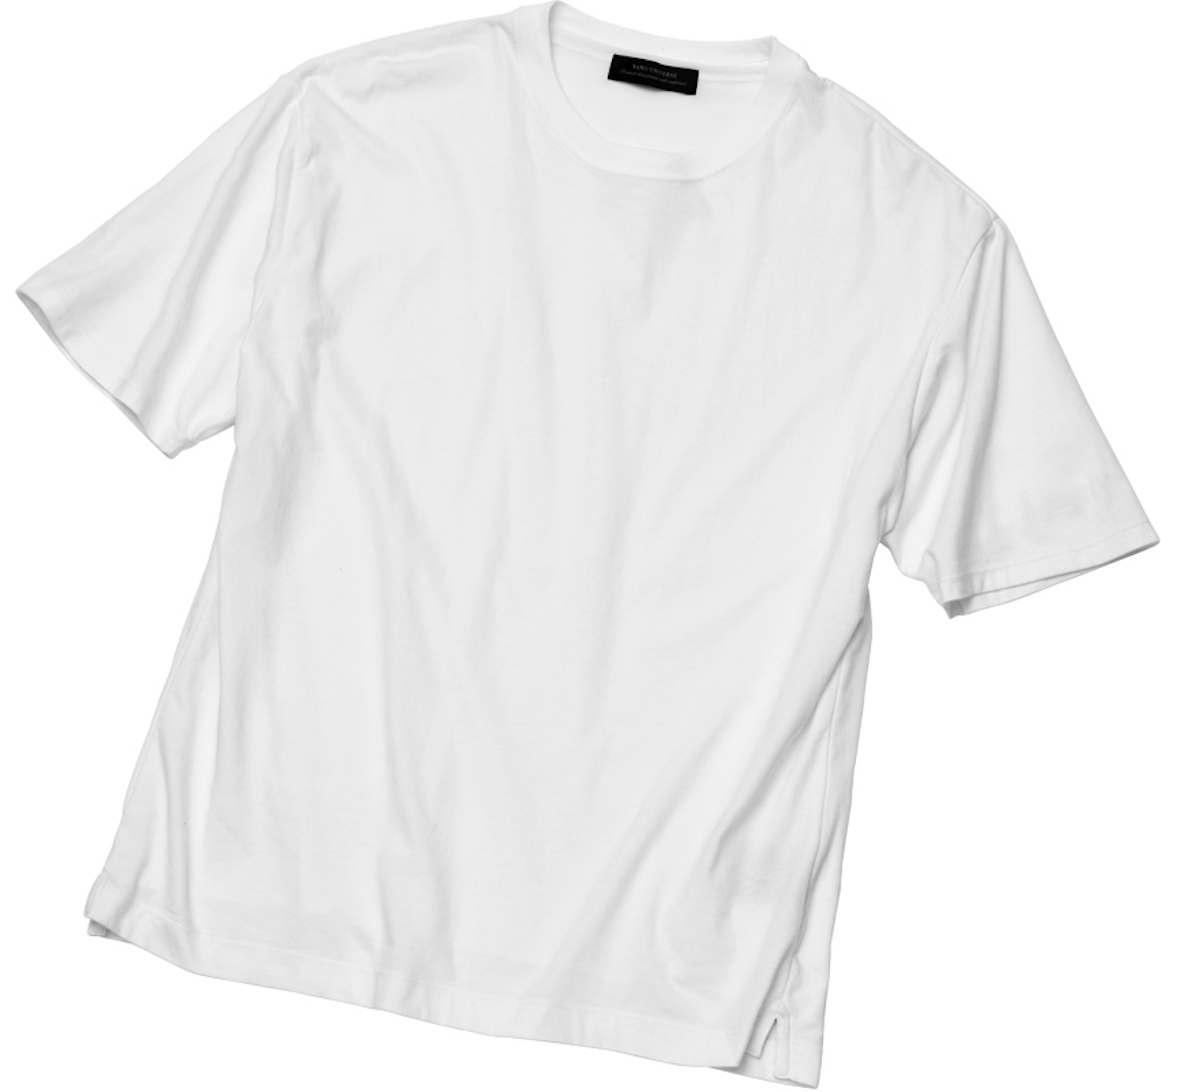 メンズ必見 白tシャツをオシャレにする小物4選 ファッション Fineboys Online